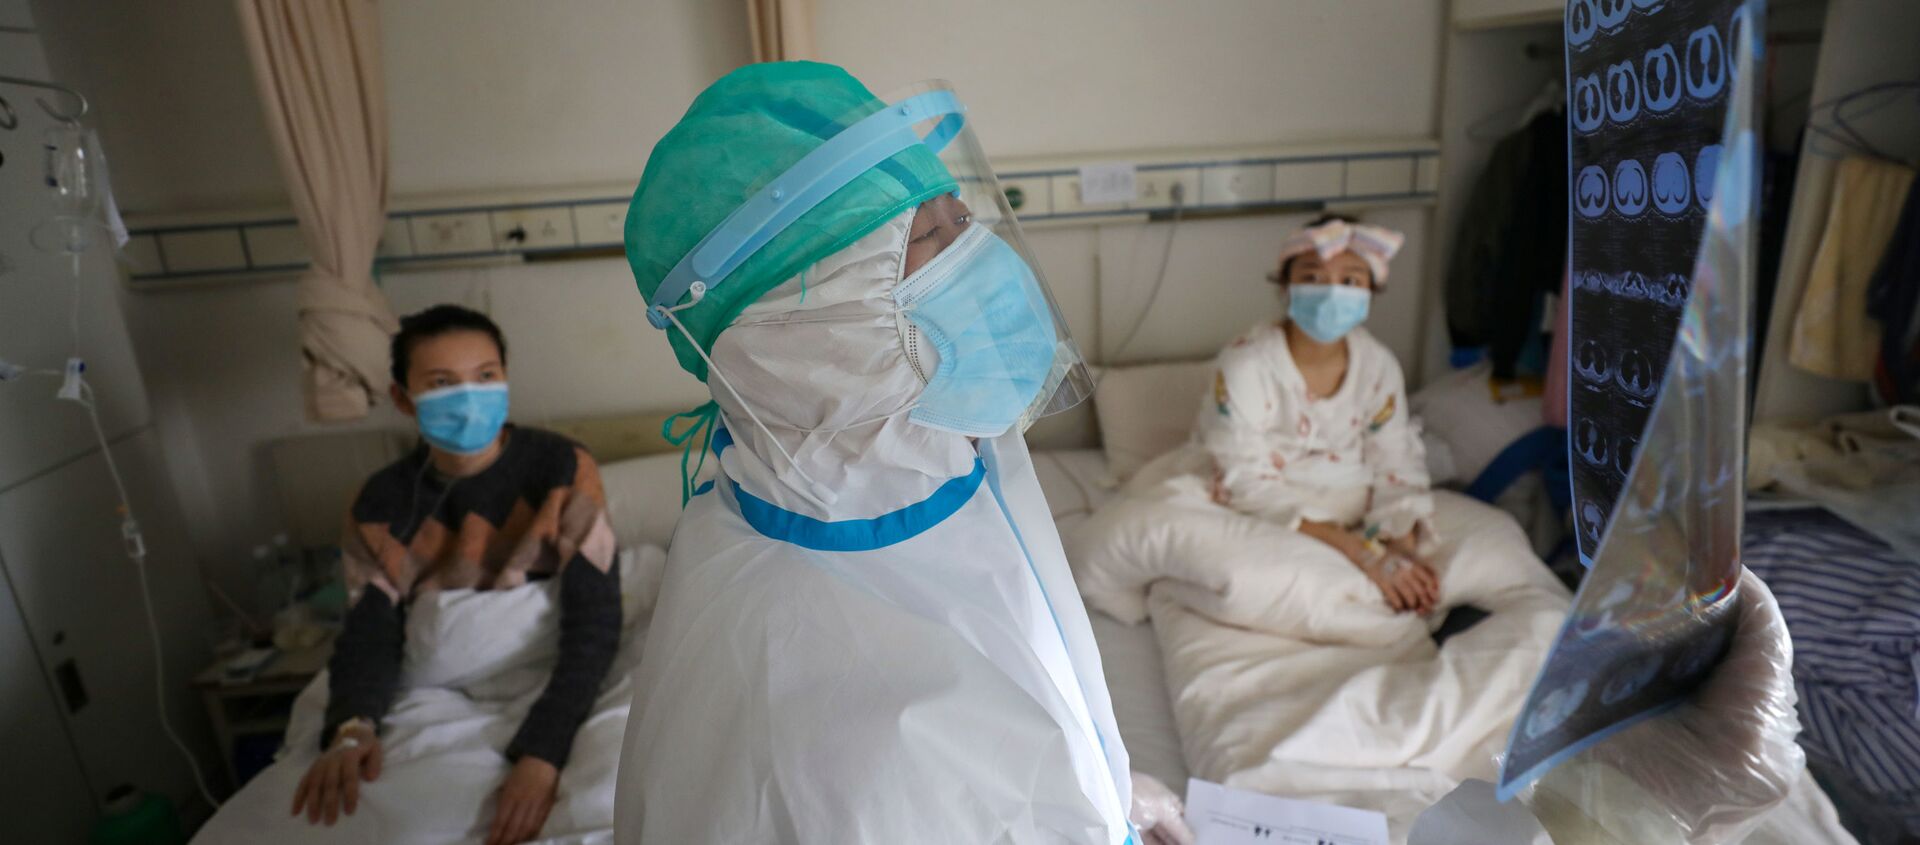 طبيب يتفقد الآشعة المقطعية لمرضى بفيروس كورونا في مدينة ووهان الصينية - سبوتنيك عربي, 1920, 30.05.2021